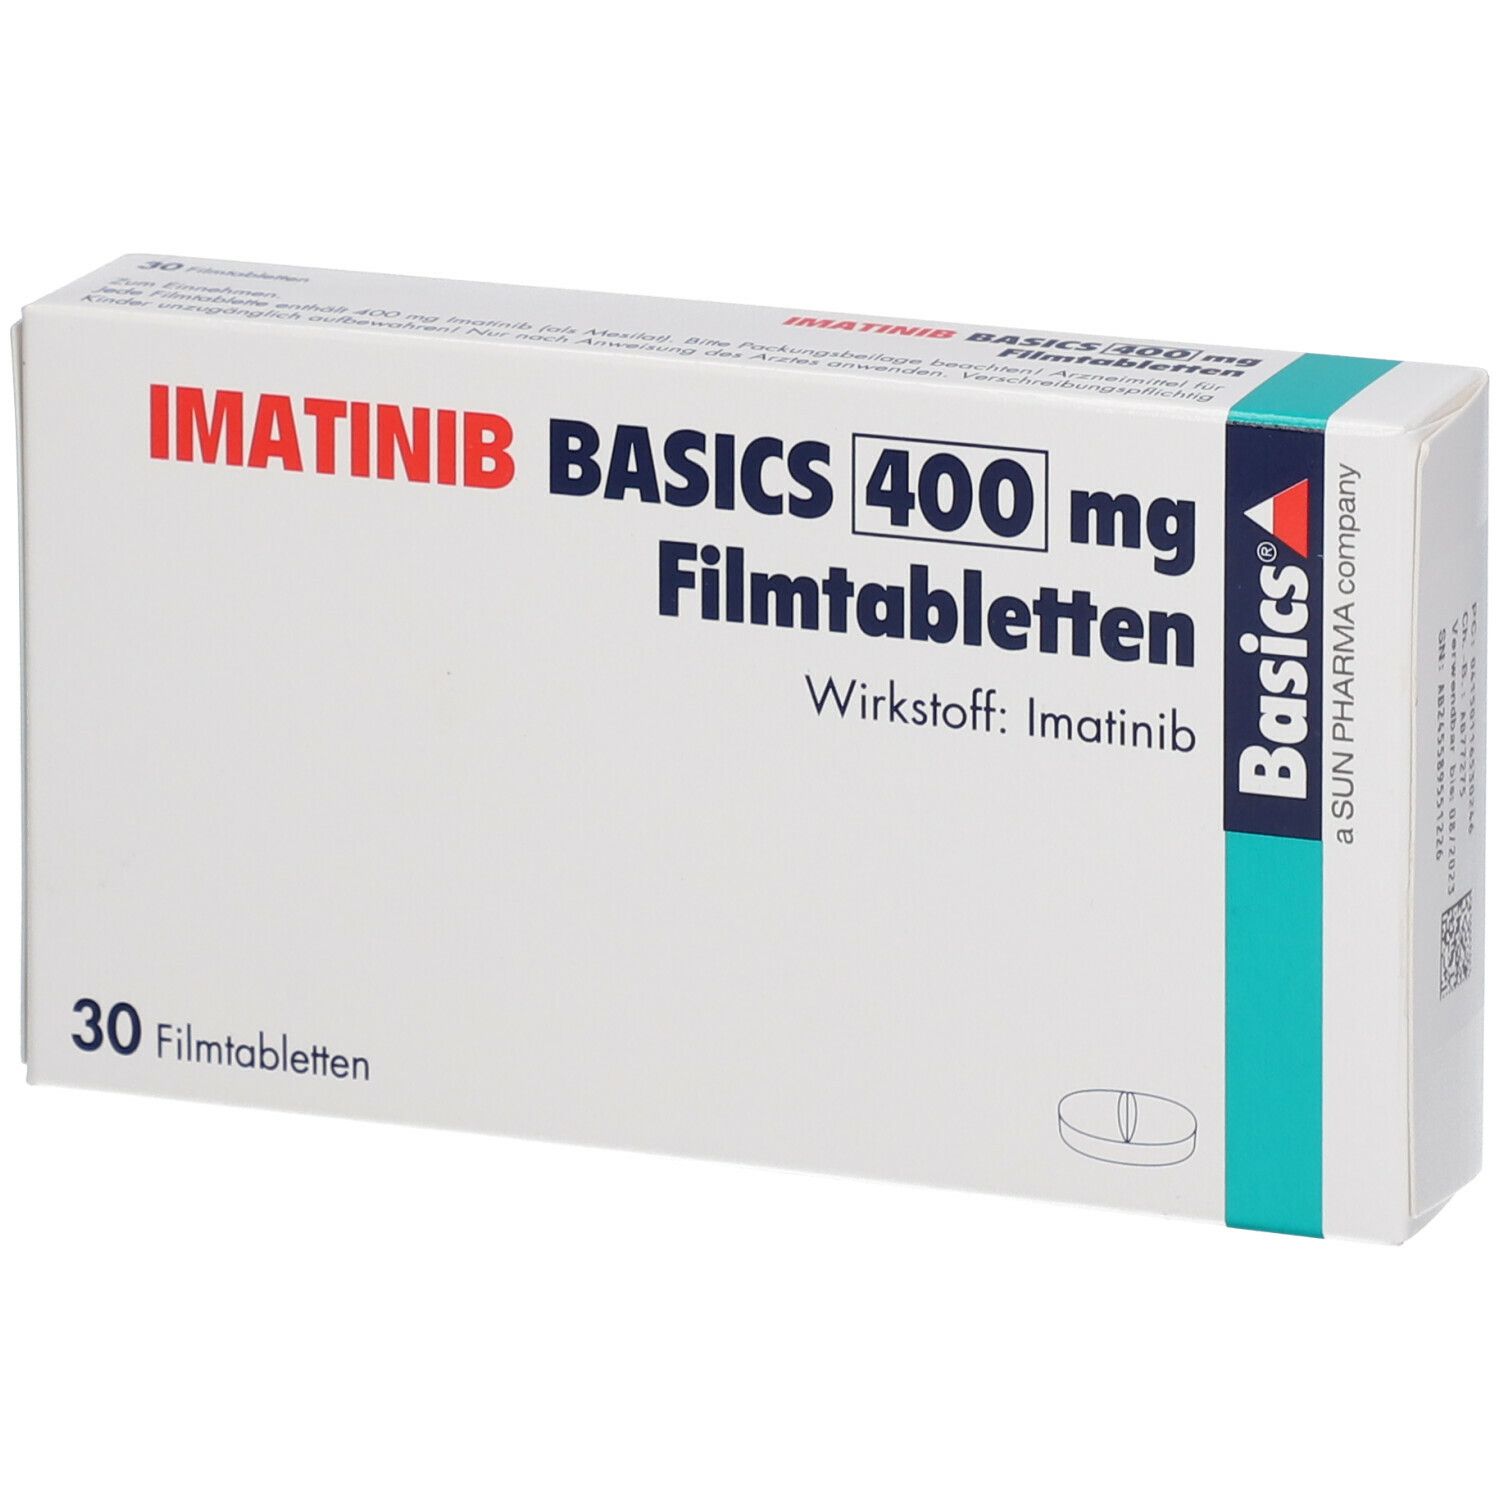 IMATINIB BASICS 400 mg